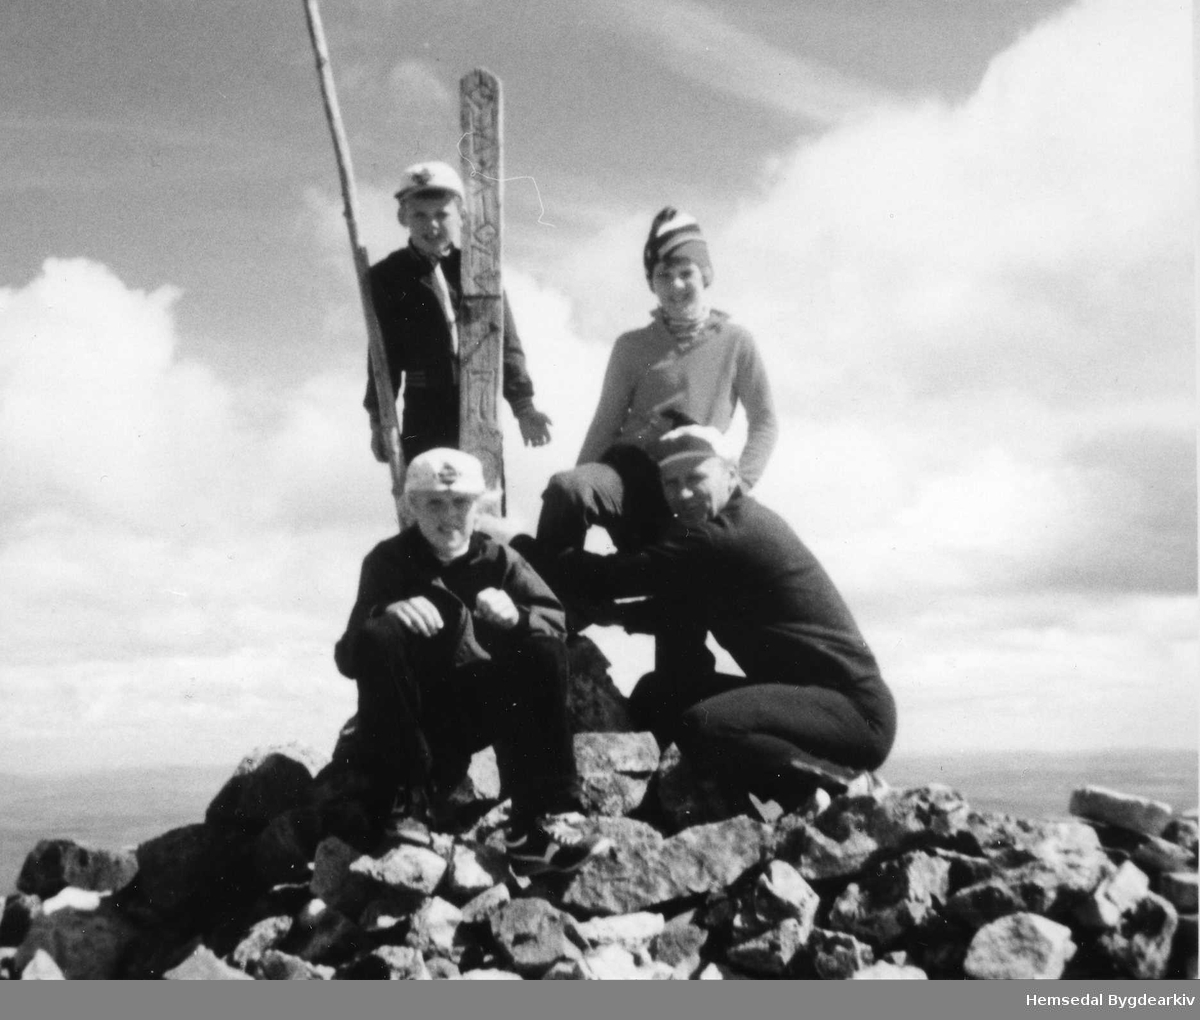 På toppen av Skogshorn i Hemsedal i 1980.
Frå venstre: Tor og Knut O. Grøthe.
Bak frå venstre: Odd og Ola Grøthe
